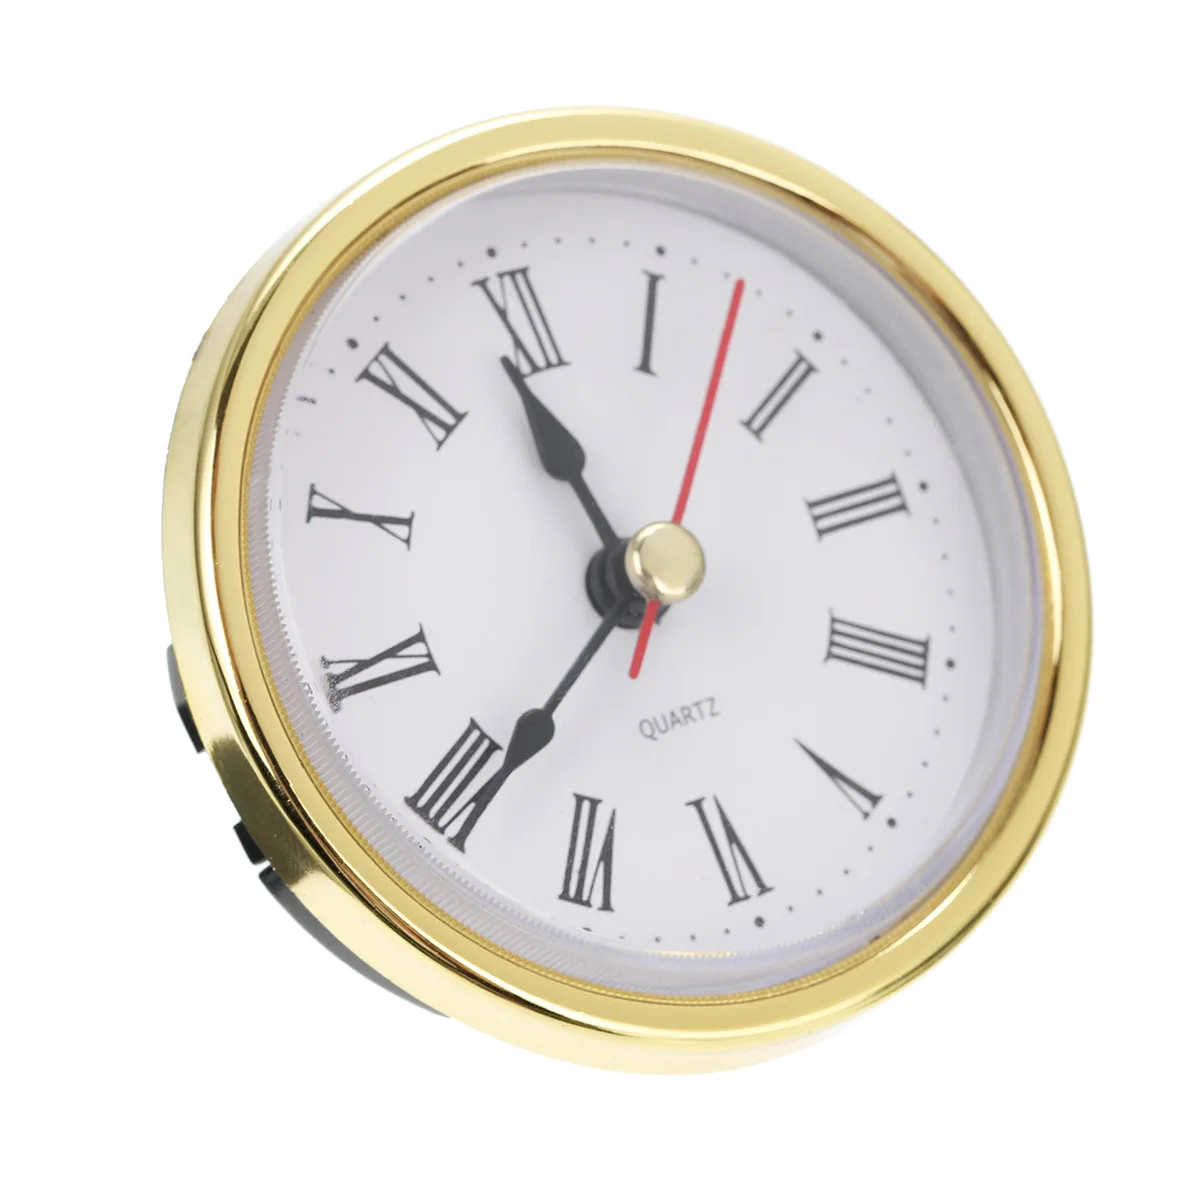 Mayitr Round Wall Clock Head 2-1/2" (65mm) DIY Clock Quartz Movement Insert Roman Numeral Tools Accessories